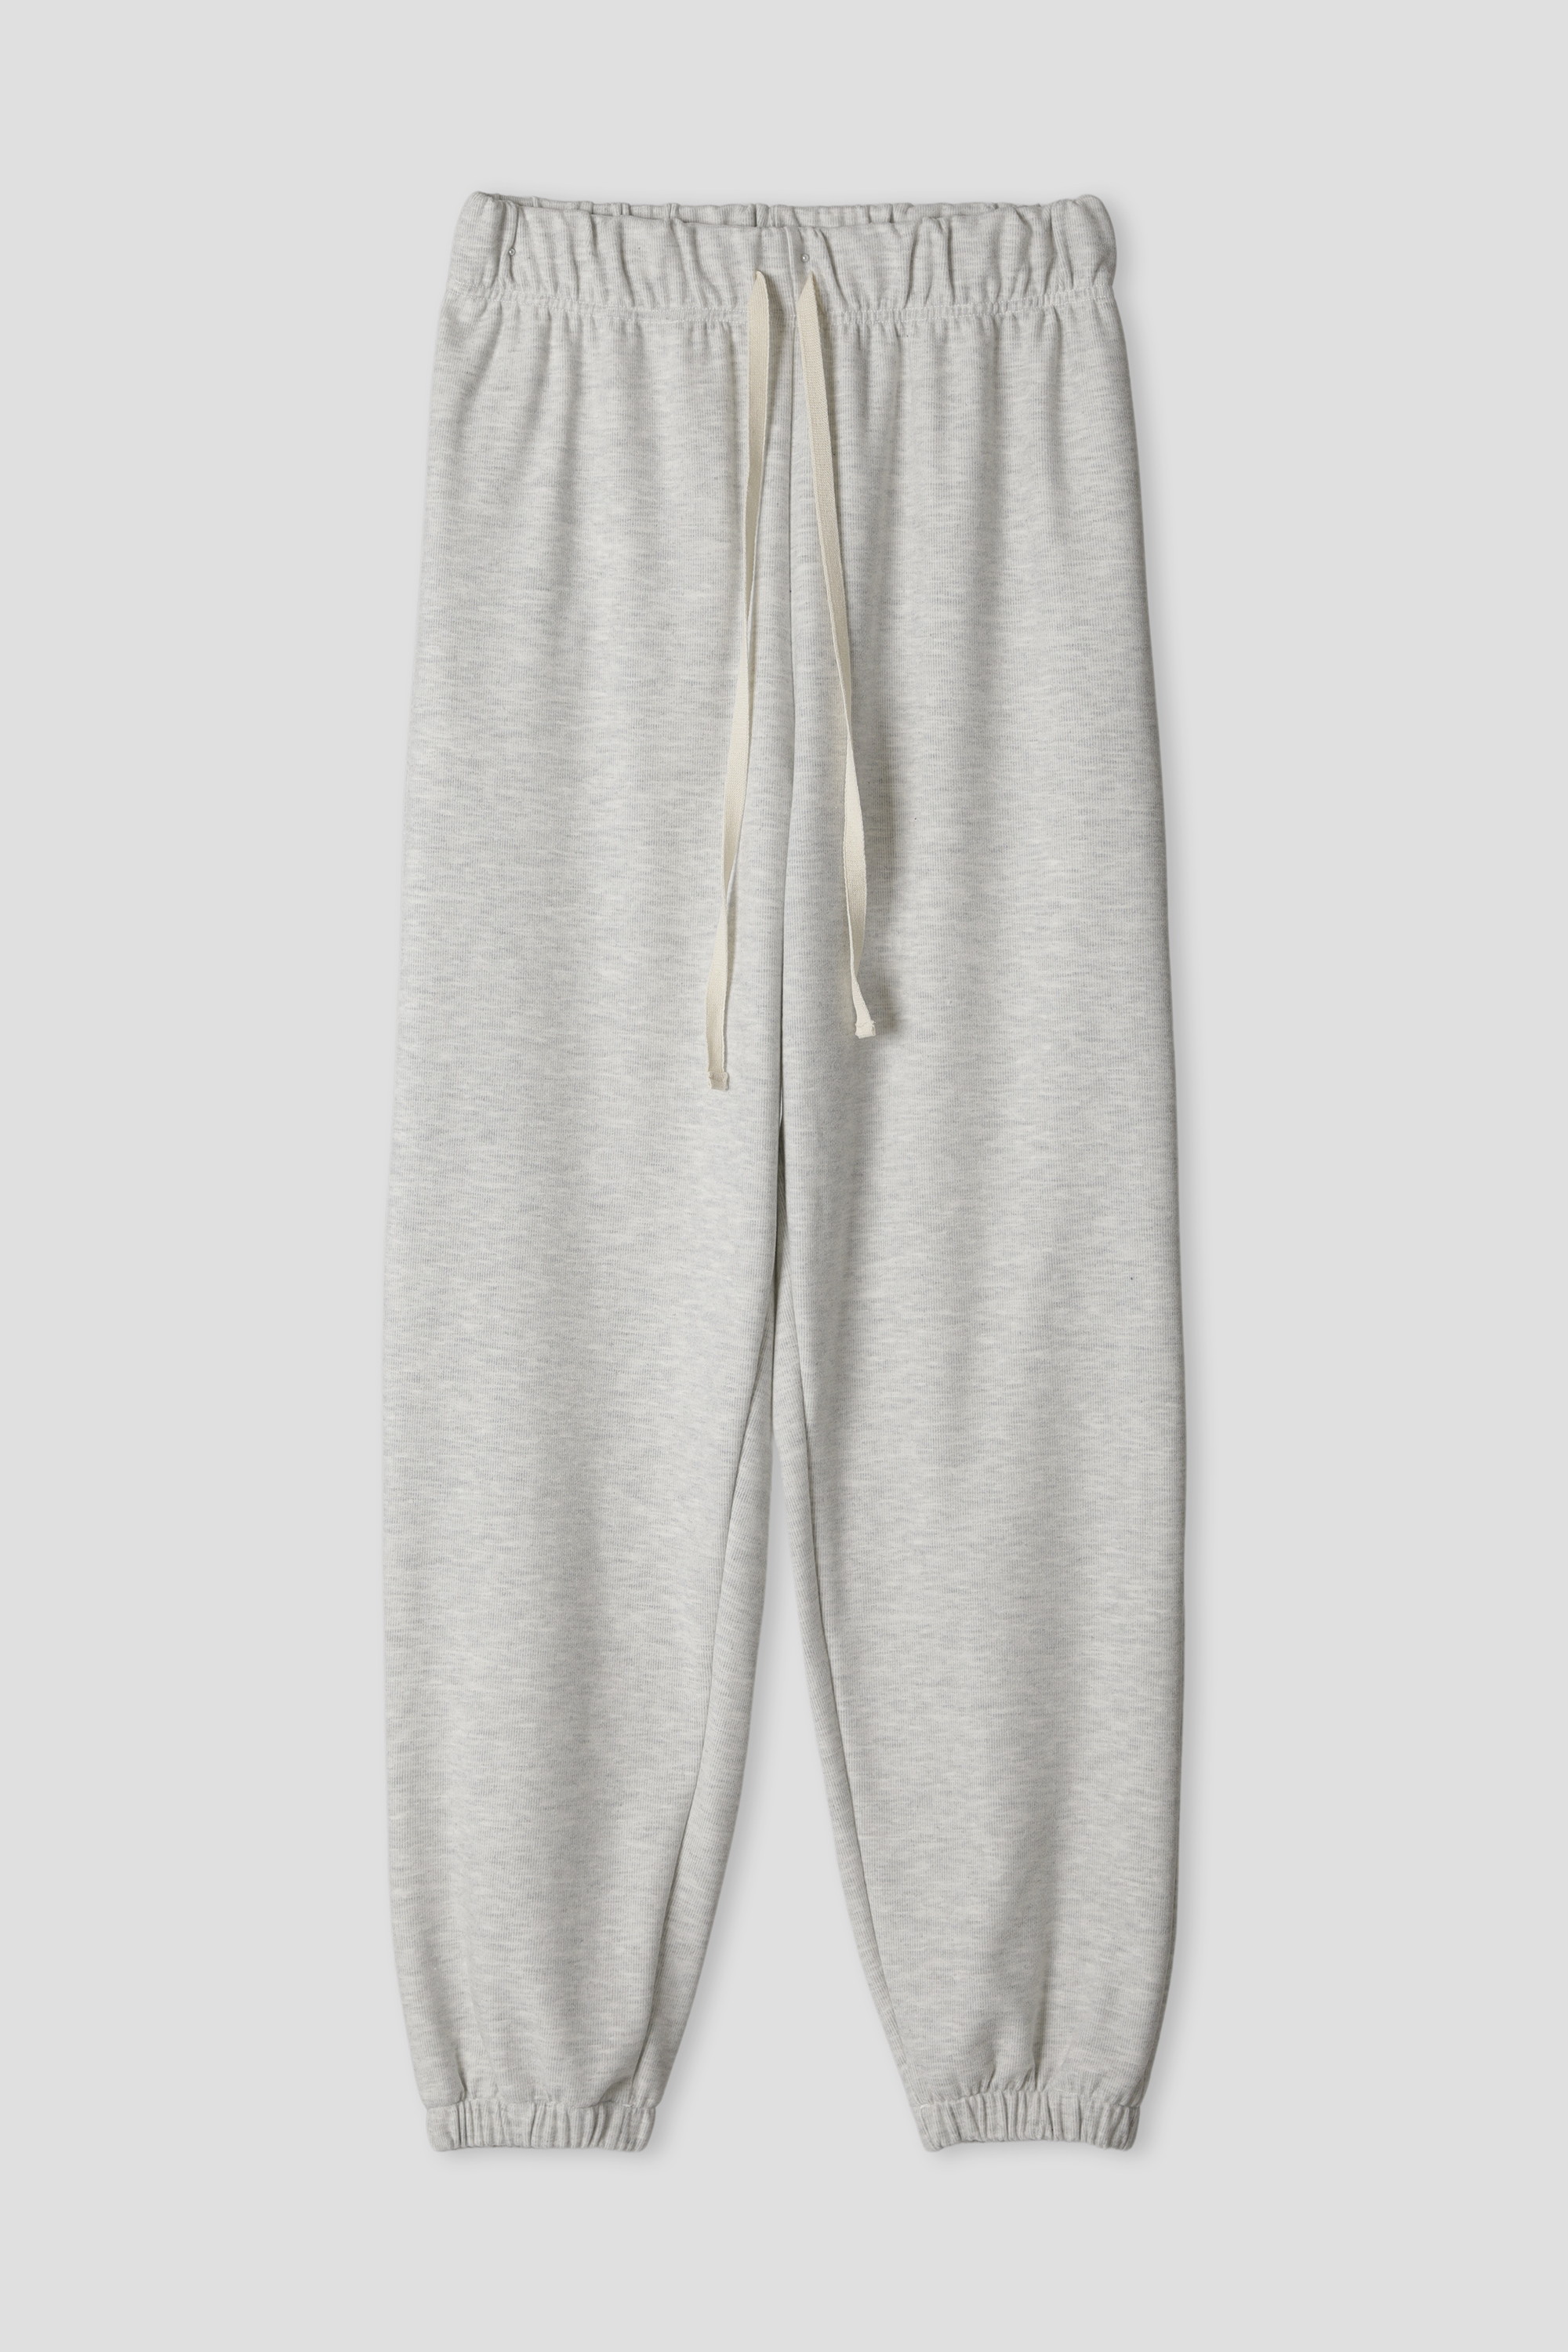 [ITV] Cozy simple jogger pants [2colors]